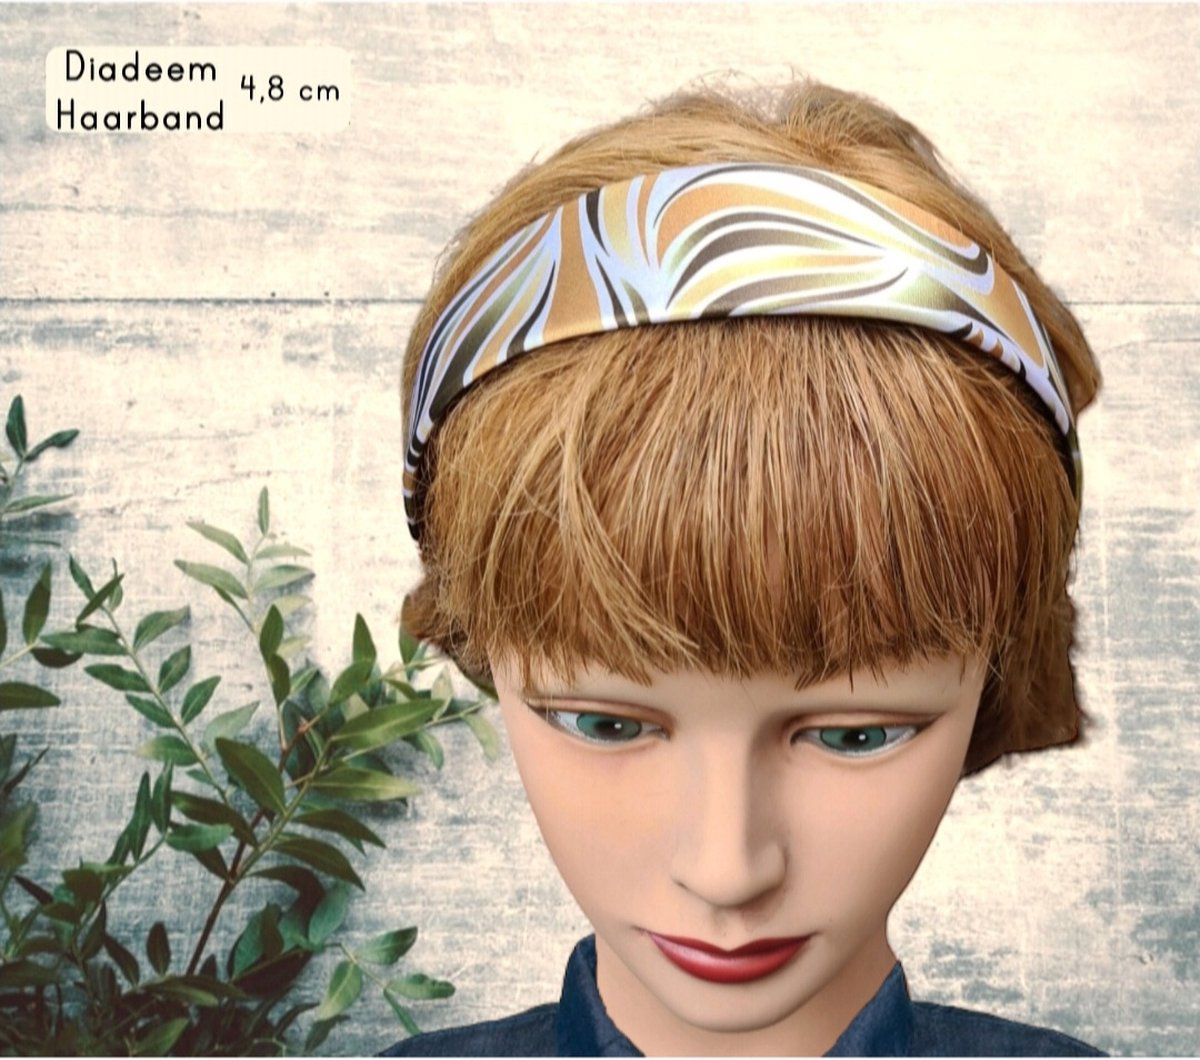 Retro Print (jaren 70) - Diadeem Haarband - PolySatin - 4,8 cm - 1 stuks - Volwassenen Tieners Kinderen (8+ yr) - Casual - Feest Gala Bruiloft